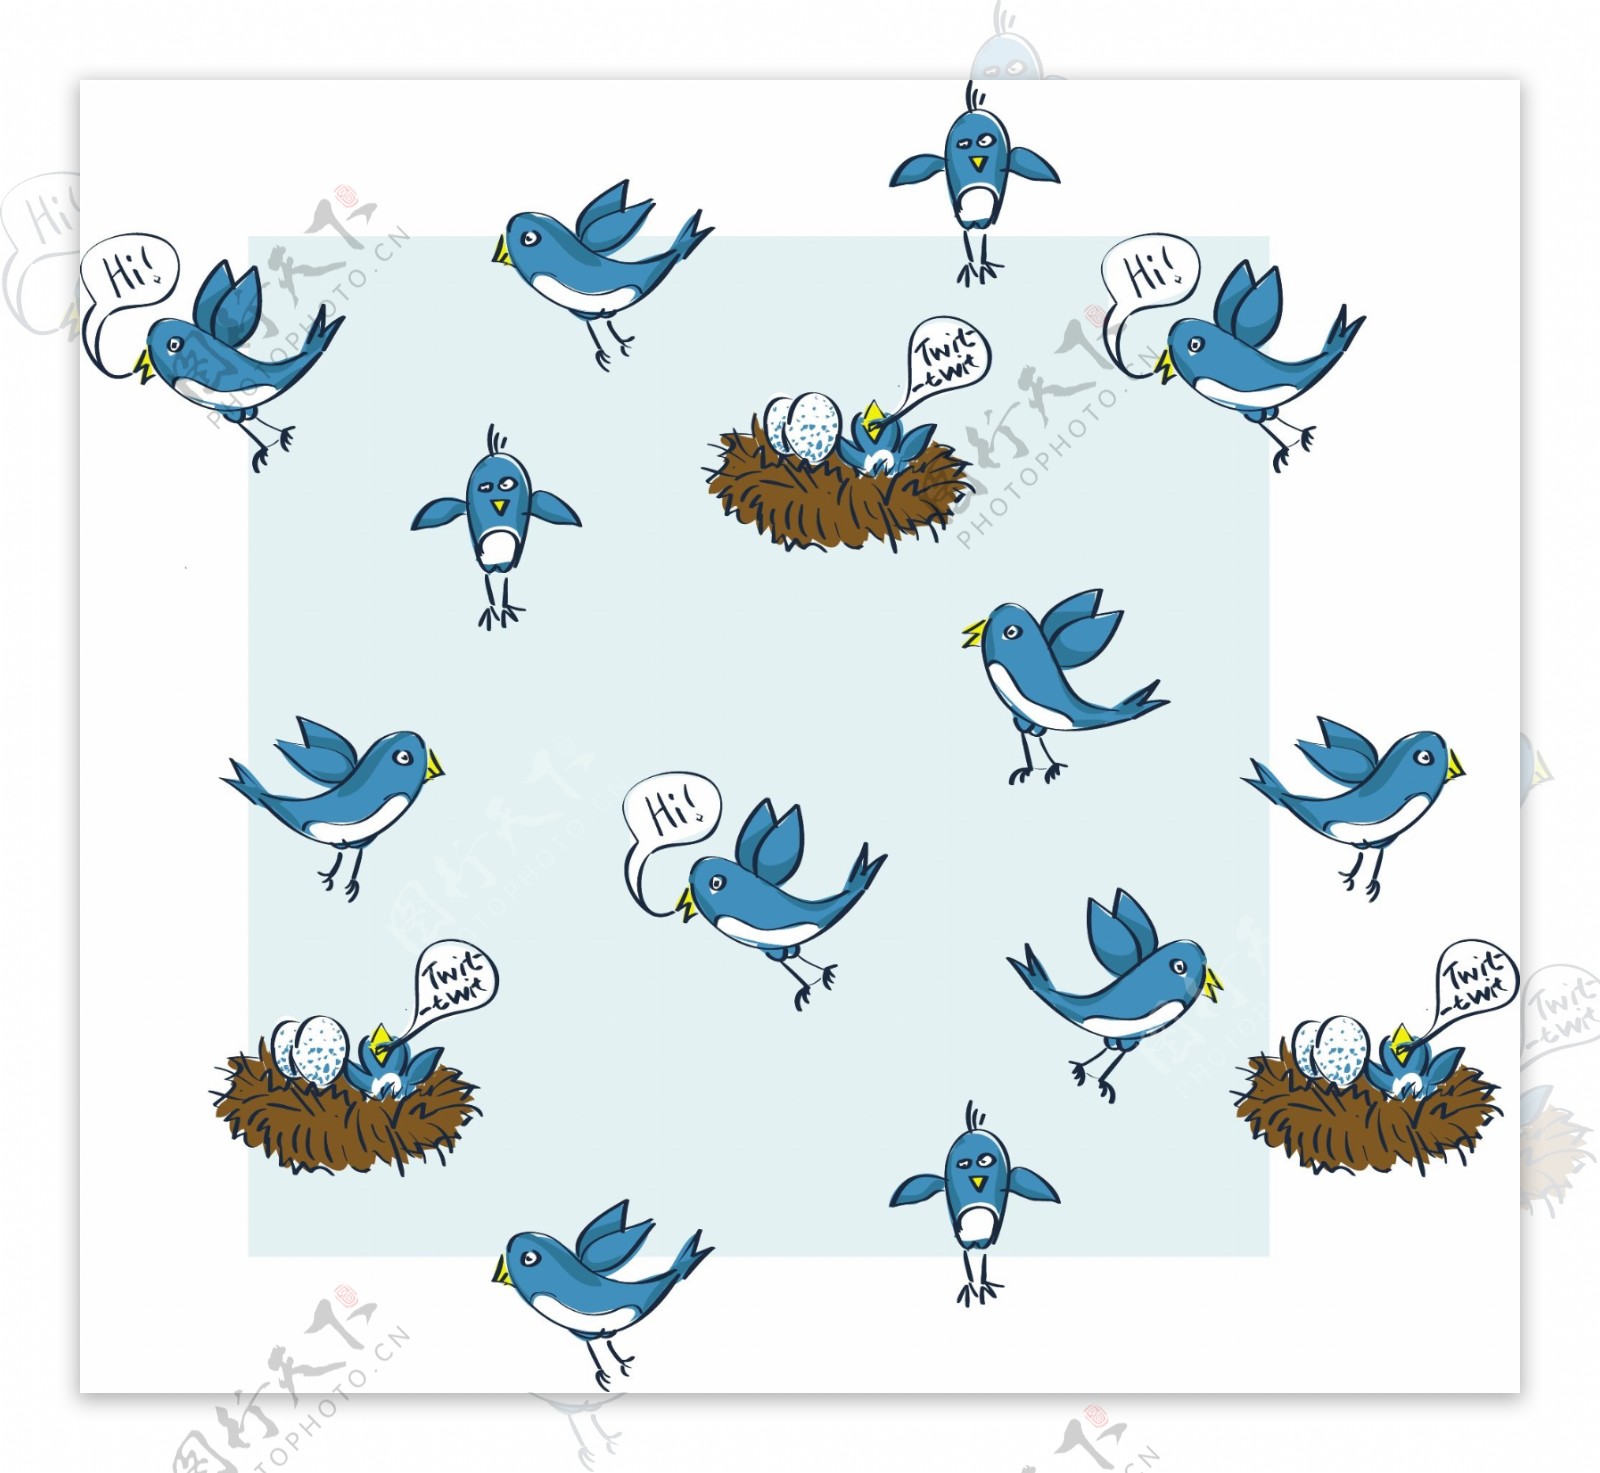 在PS图象处理软件和插画自由推特鸟图案